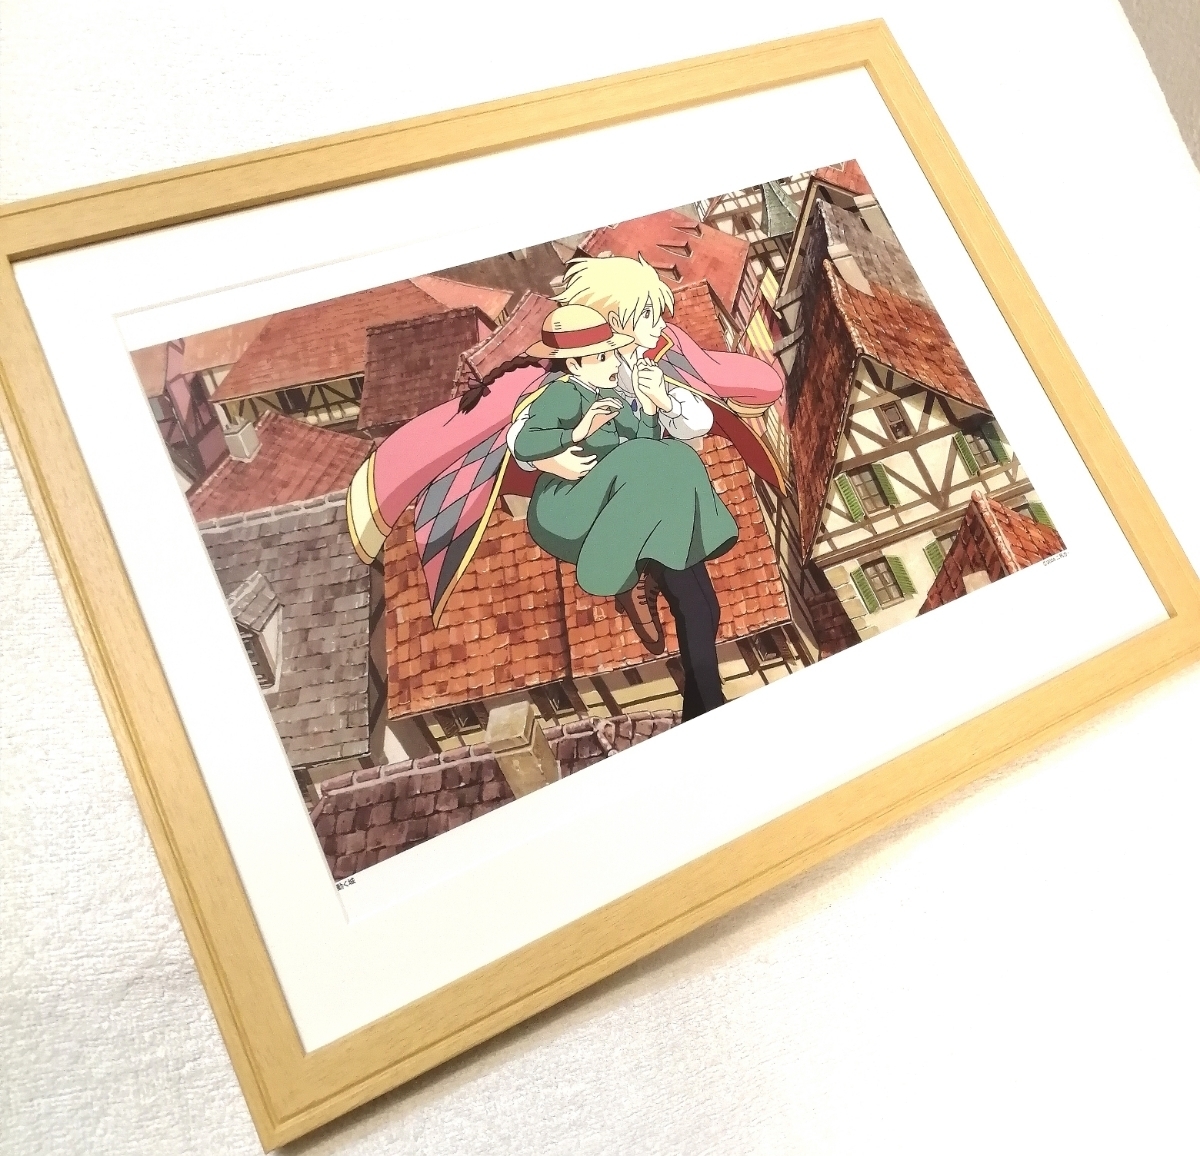 ¡Súper raro! Studio Ghibli Howl's Moving Castle [Artículo enmarcado] Ghibli Calendario Cartel Pintura mural Postal Reproducción Arte original Hayao Miyazaki b, historietas, productos de anime, otros